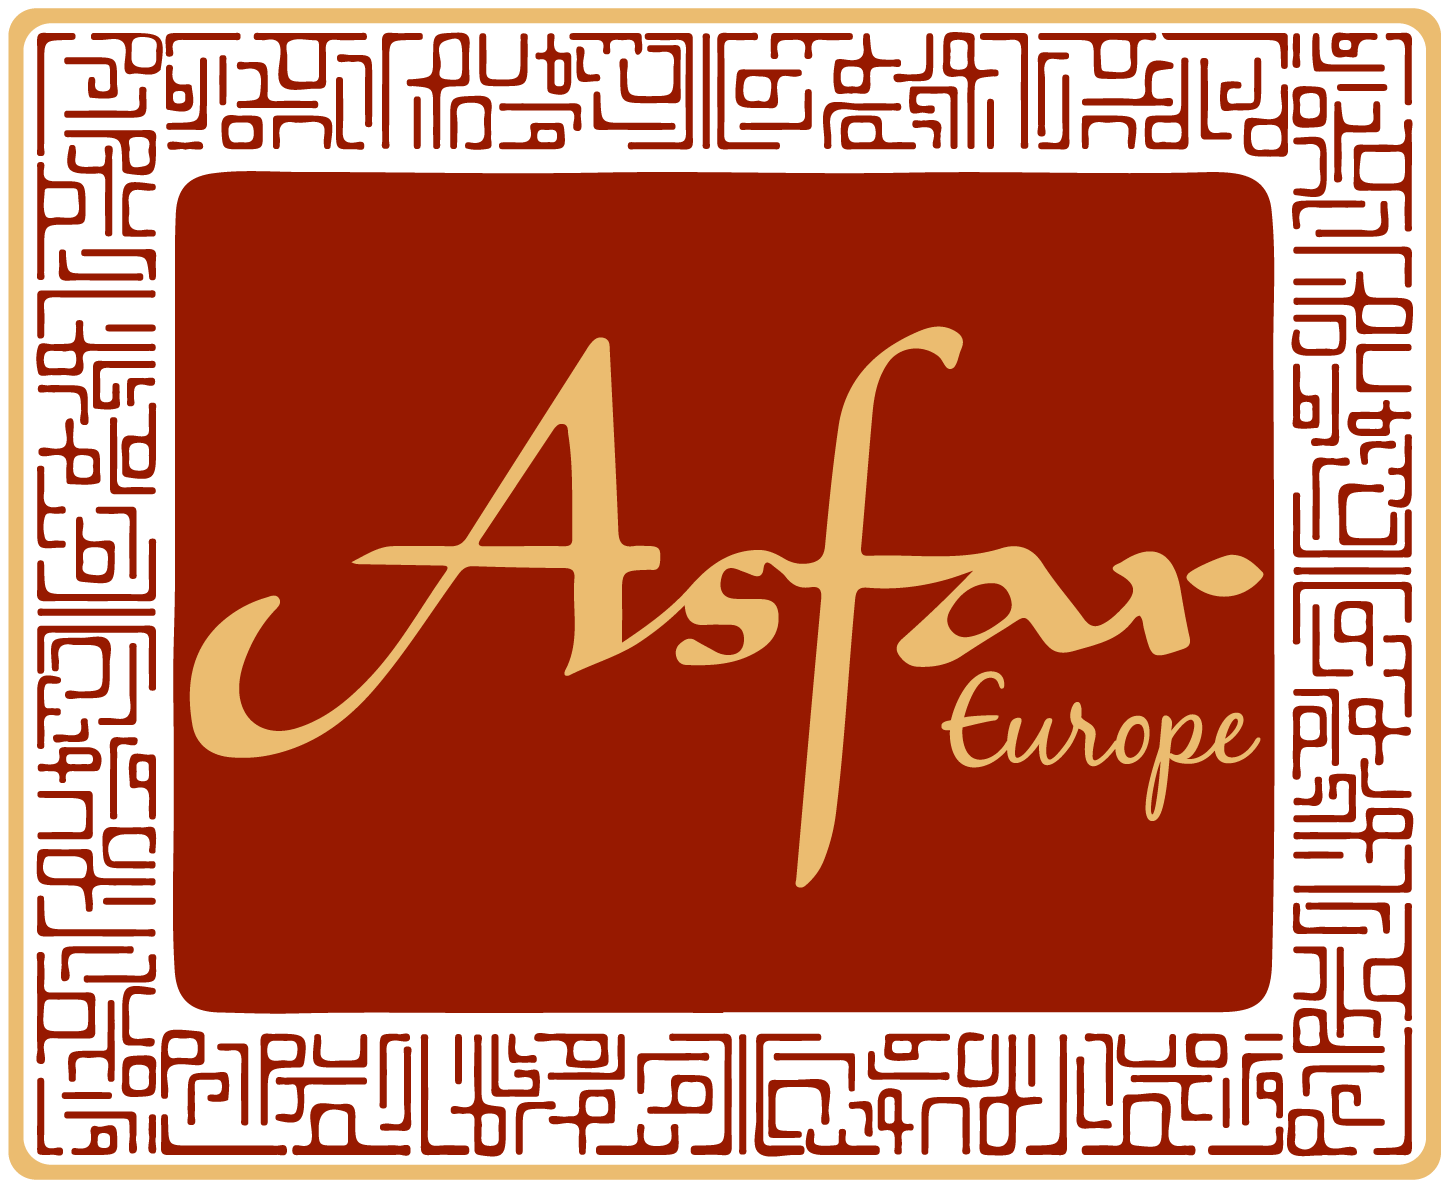 AsfarEurope